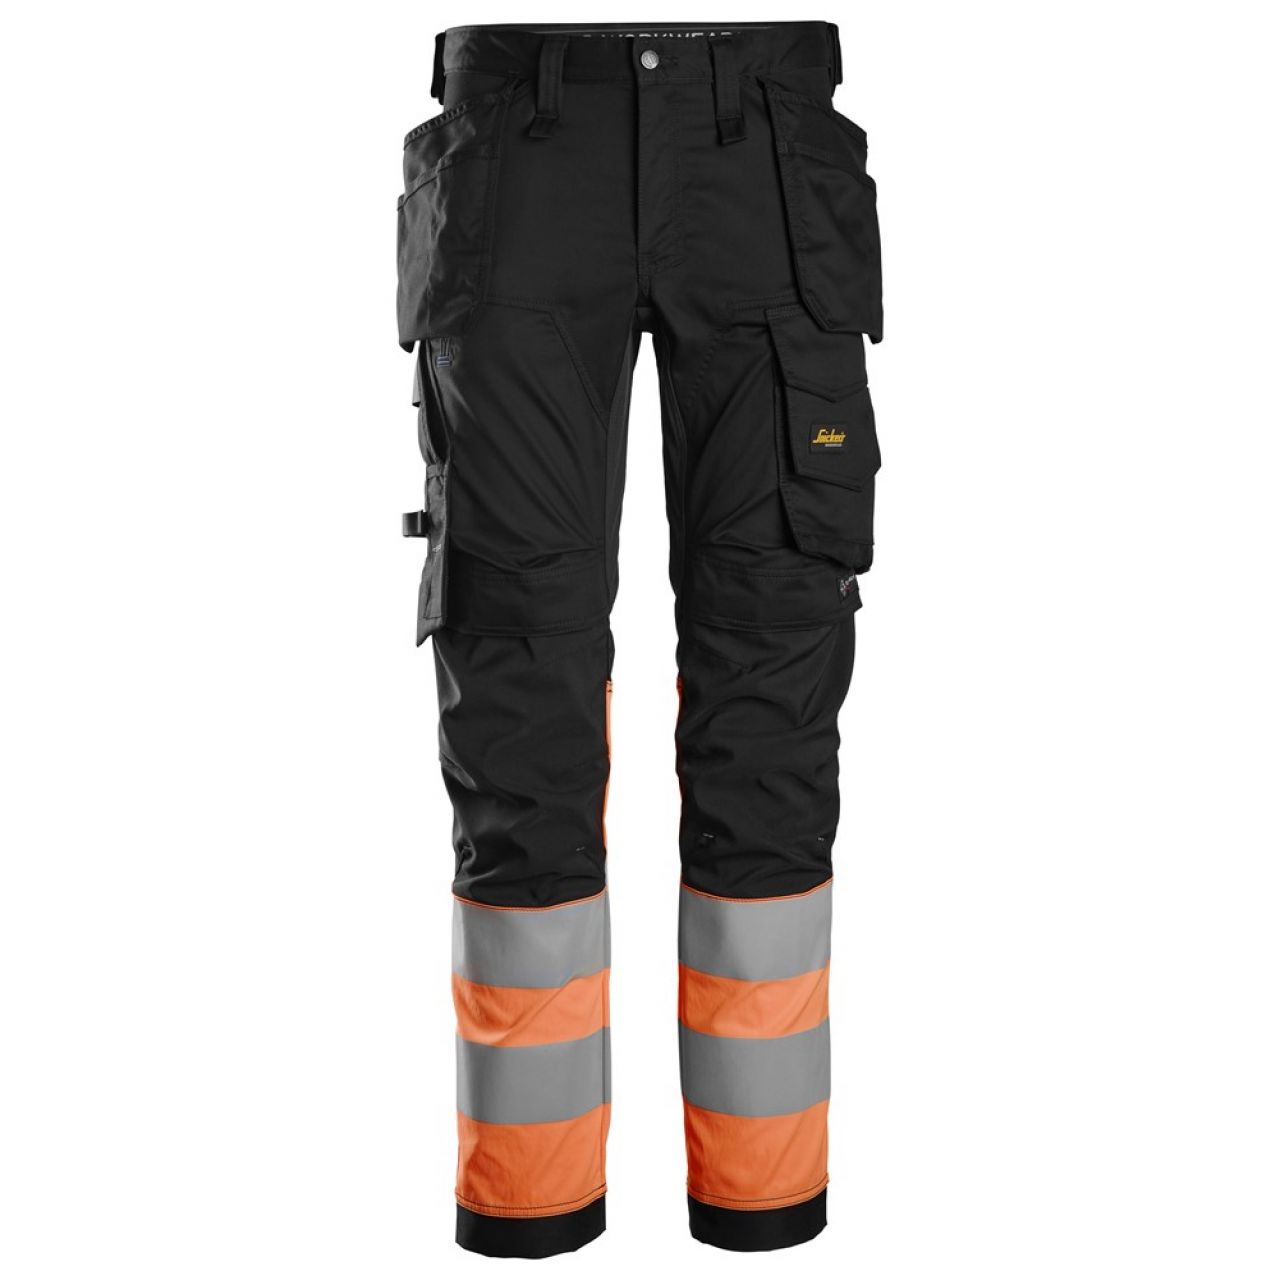 6234 Pantalones largos de trabajo elásticos de alta visibilidad clase 1 con bolsillos flotantes negro-naranja talla 160